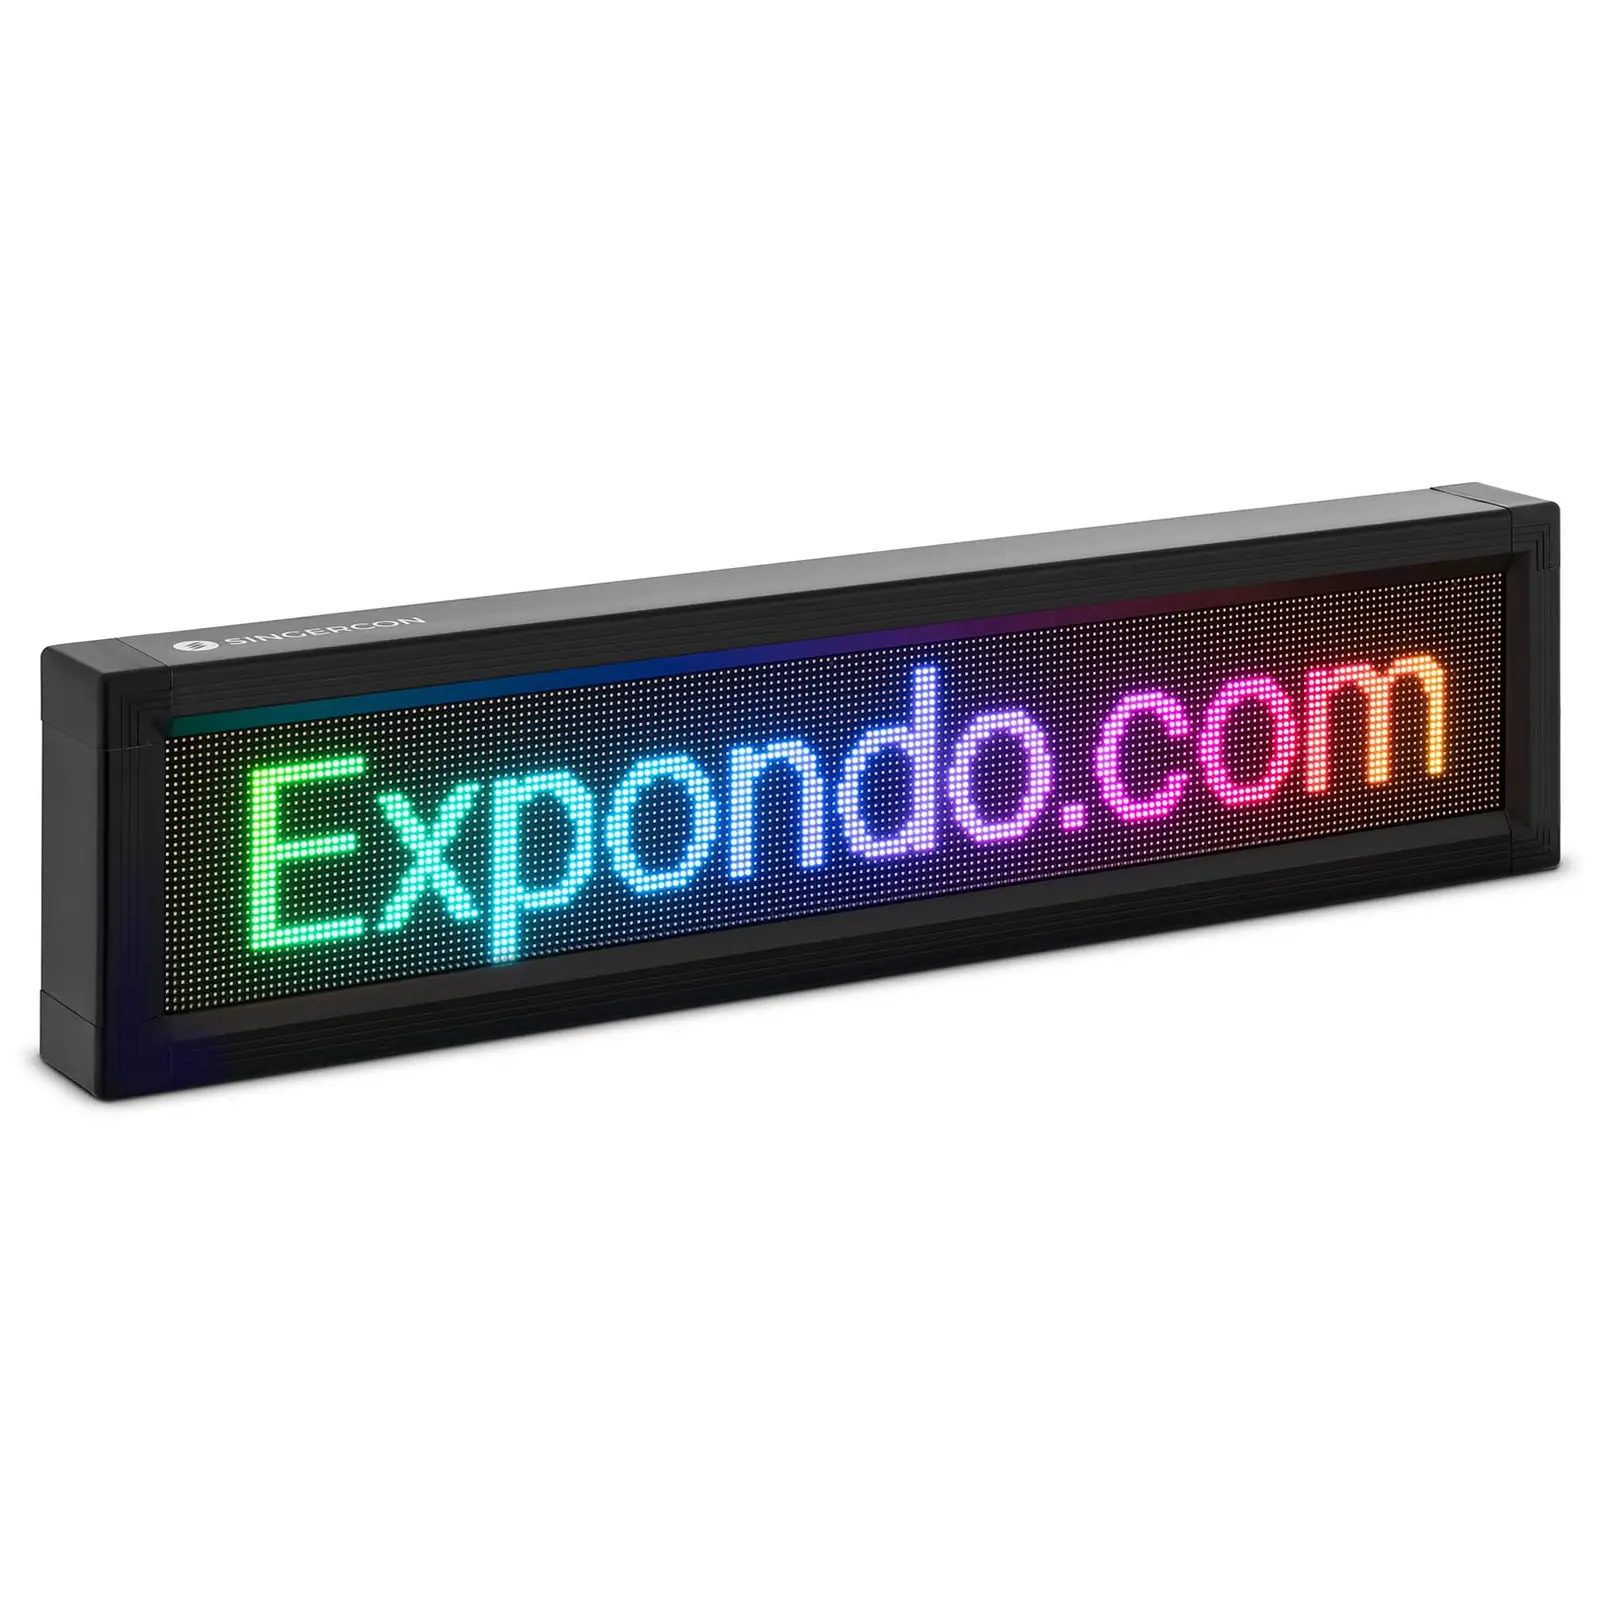 Plošča z LED zaslonom - 192 x 32 barvne LED diode - 67 x 19 cm - možnost programiranja prek 